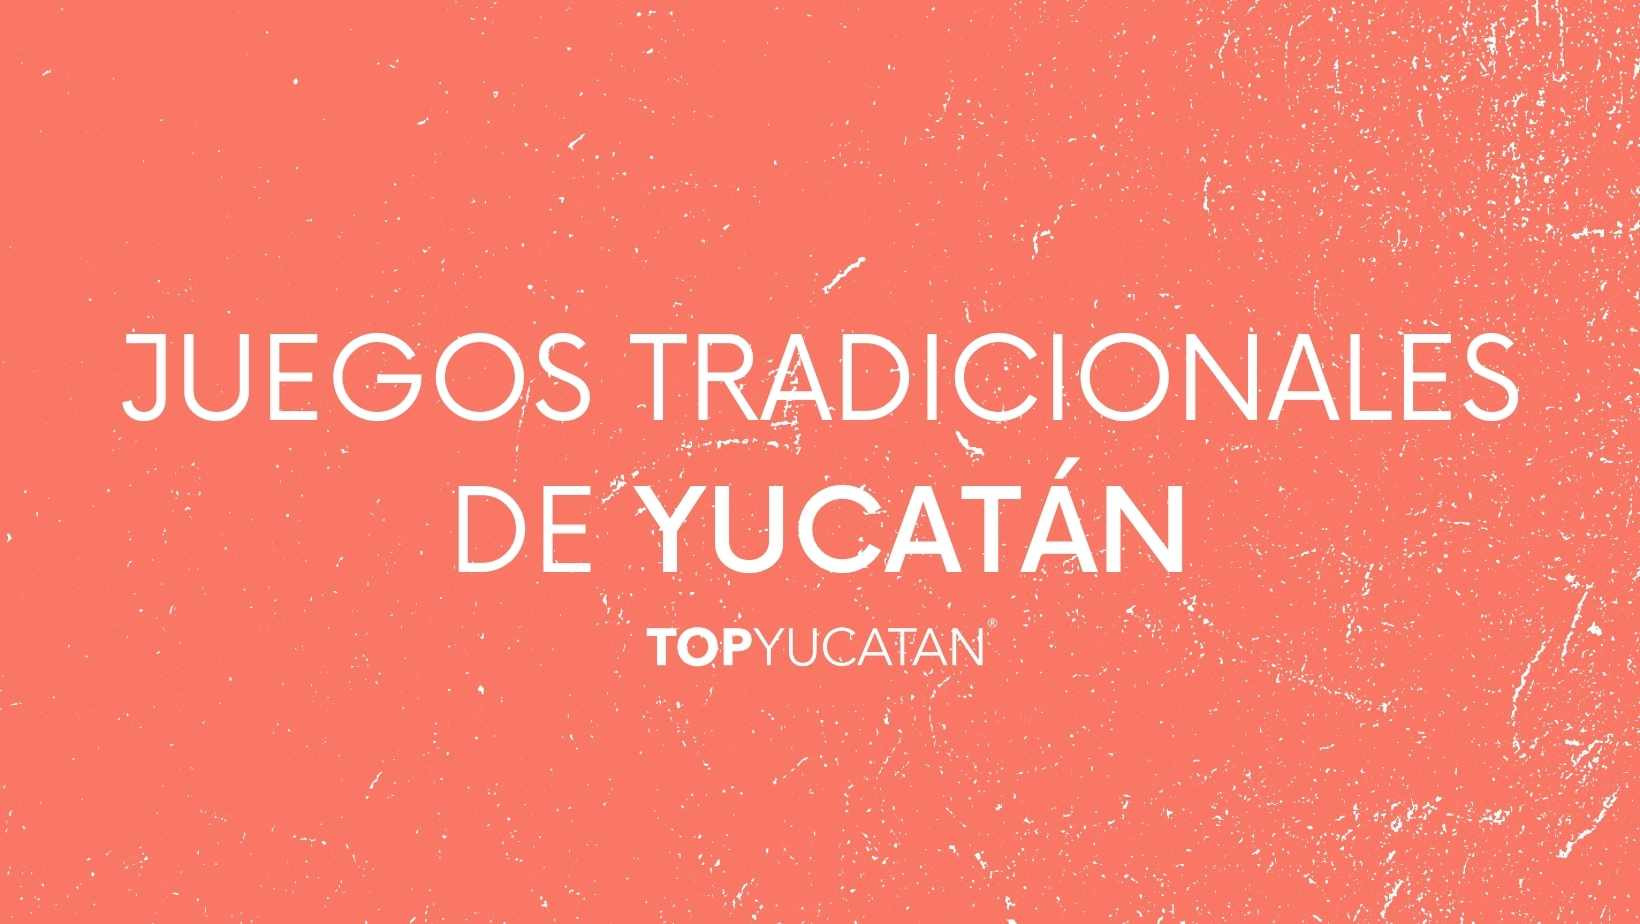 Juegos Tradicionales de Yucatán